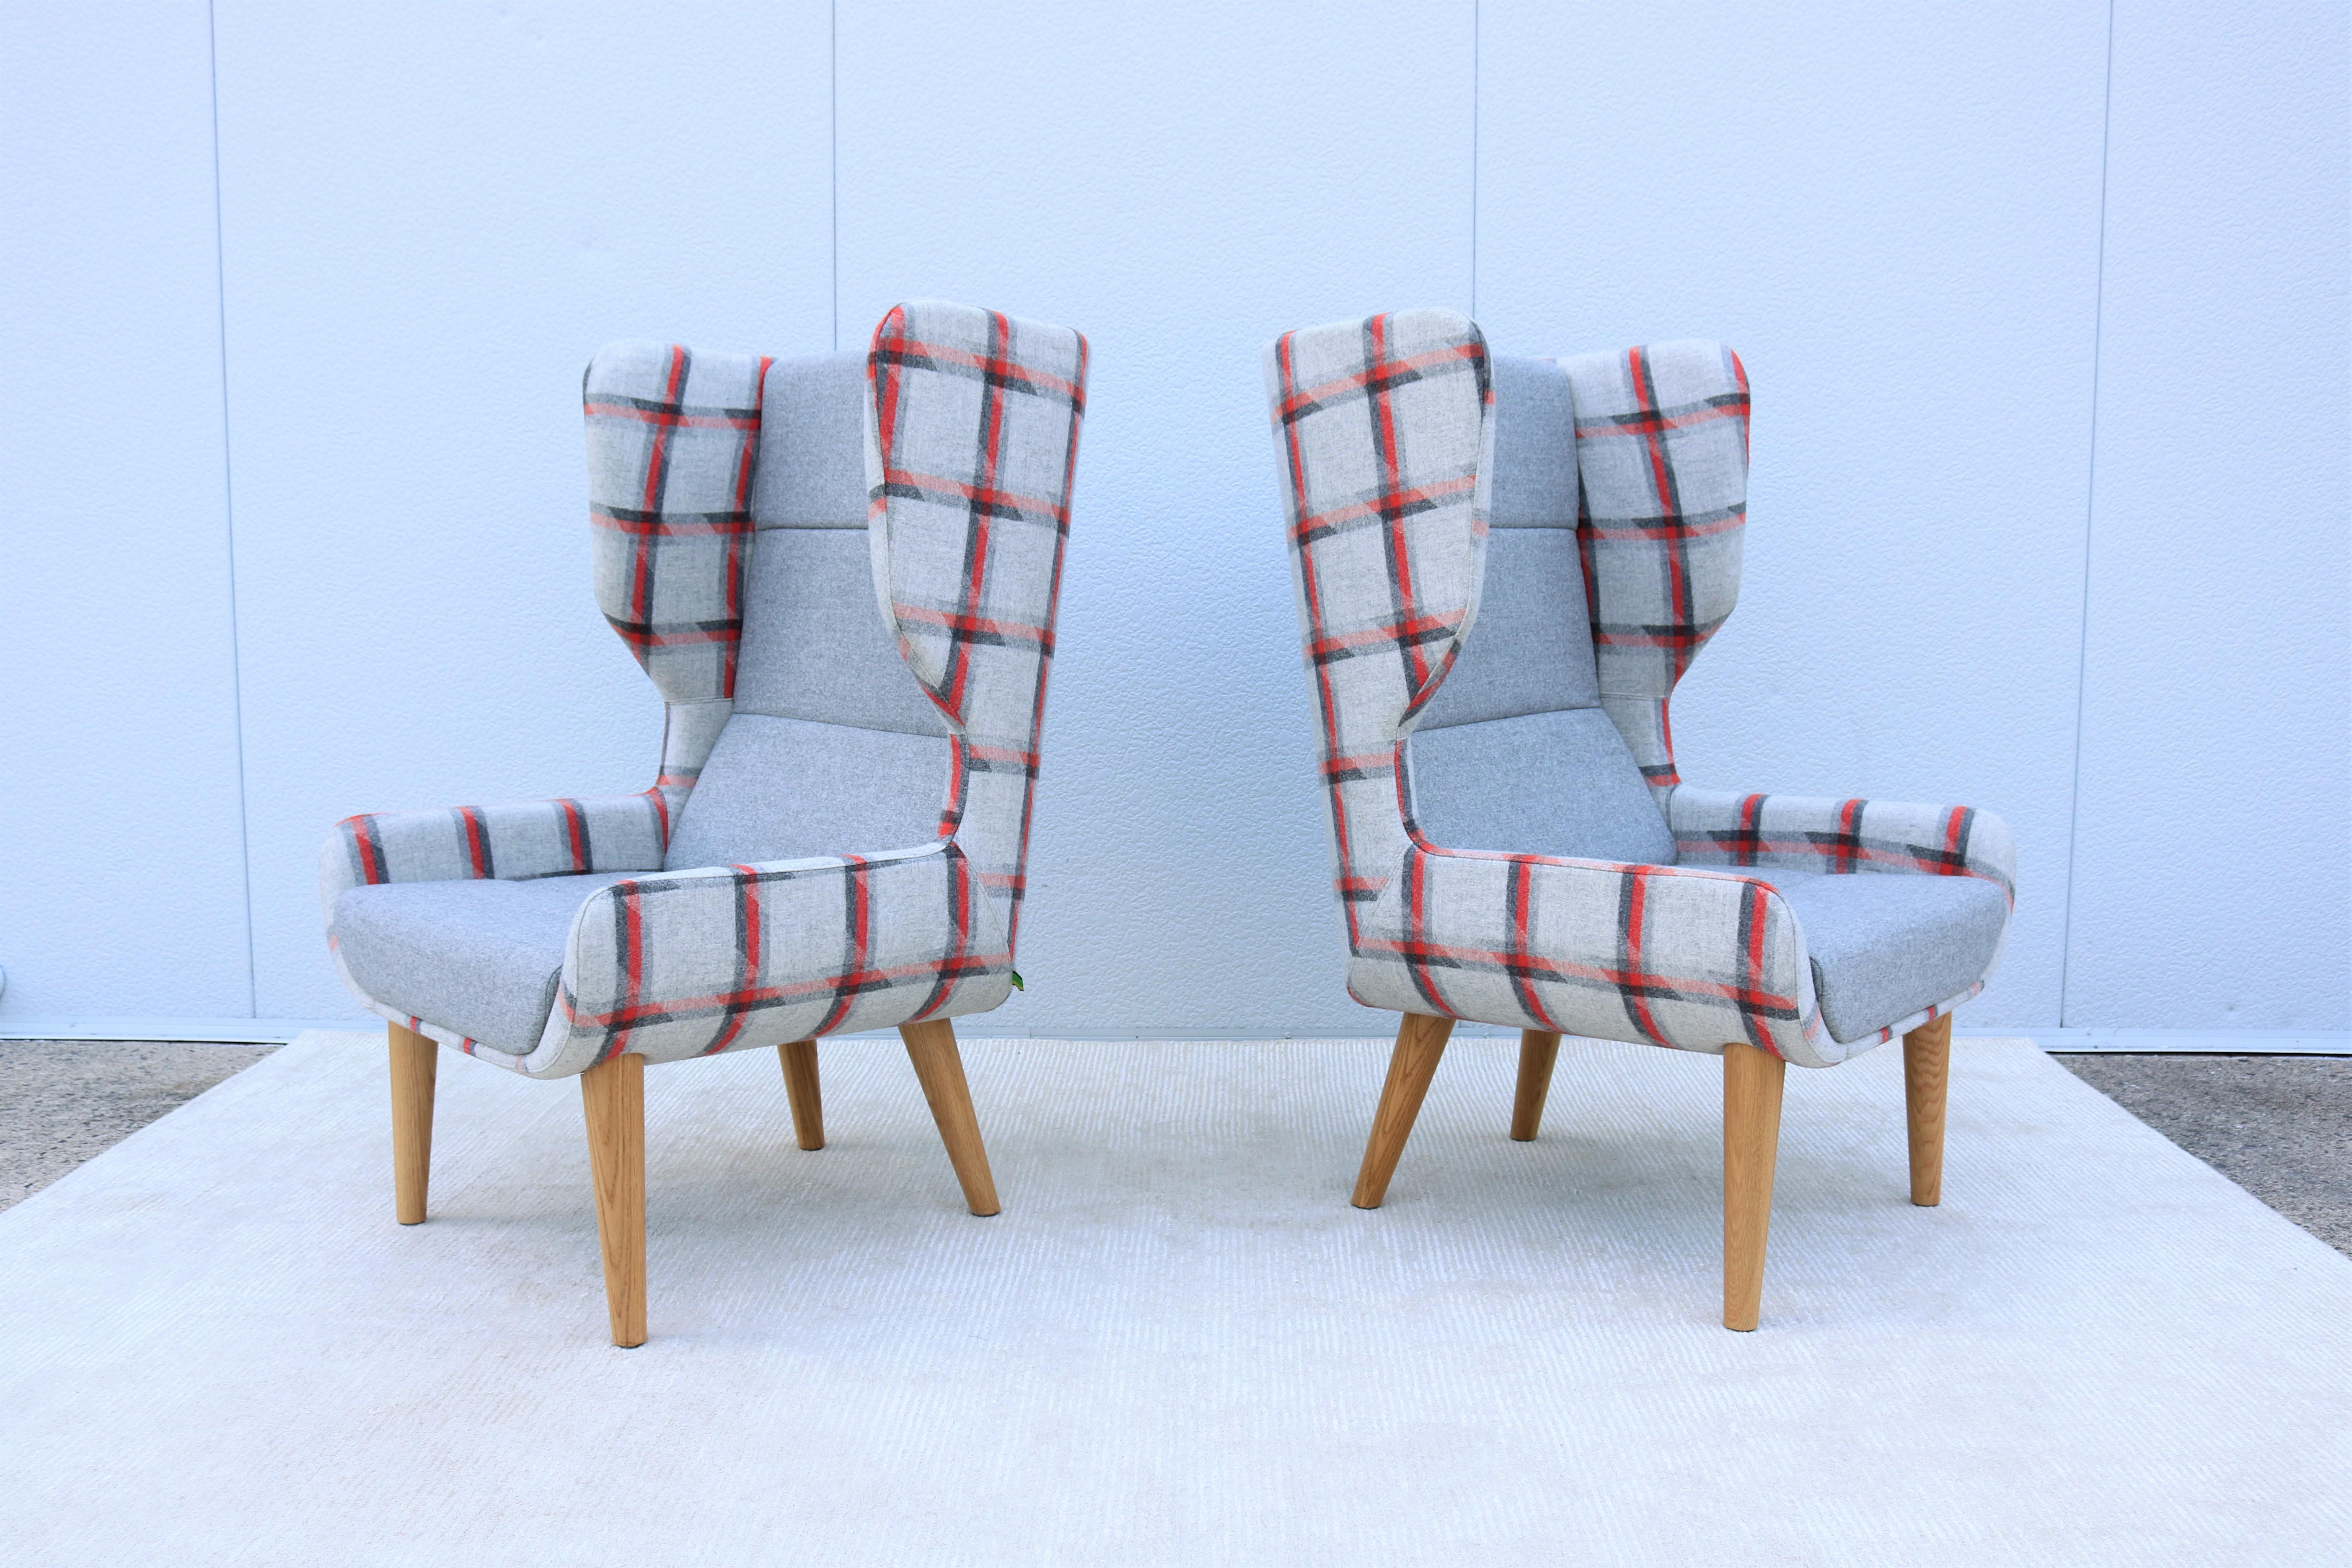 Dieser fabelhafte Hush-Stuhl mit hoher Rückenlehne ist vom klassischen Wing-Back-Chair-Stil inspiriert.
Er ist bequem und stützend, hat aber eine aufrechte, positive Sitzposition. 
Das schlichte und elegante Design passt zu jeder modernen,